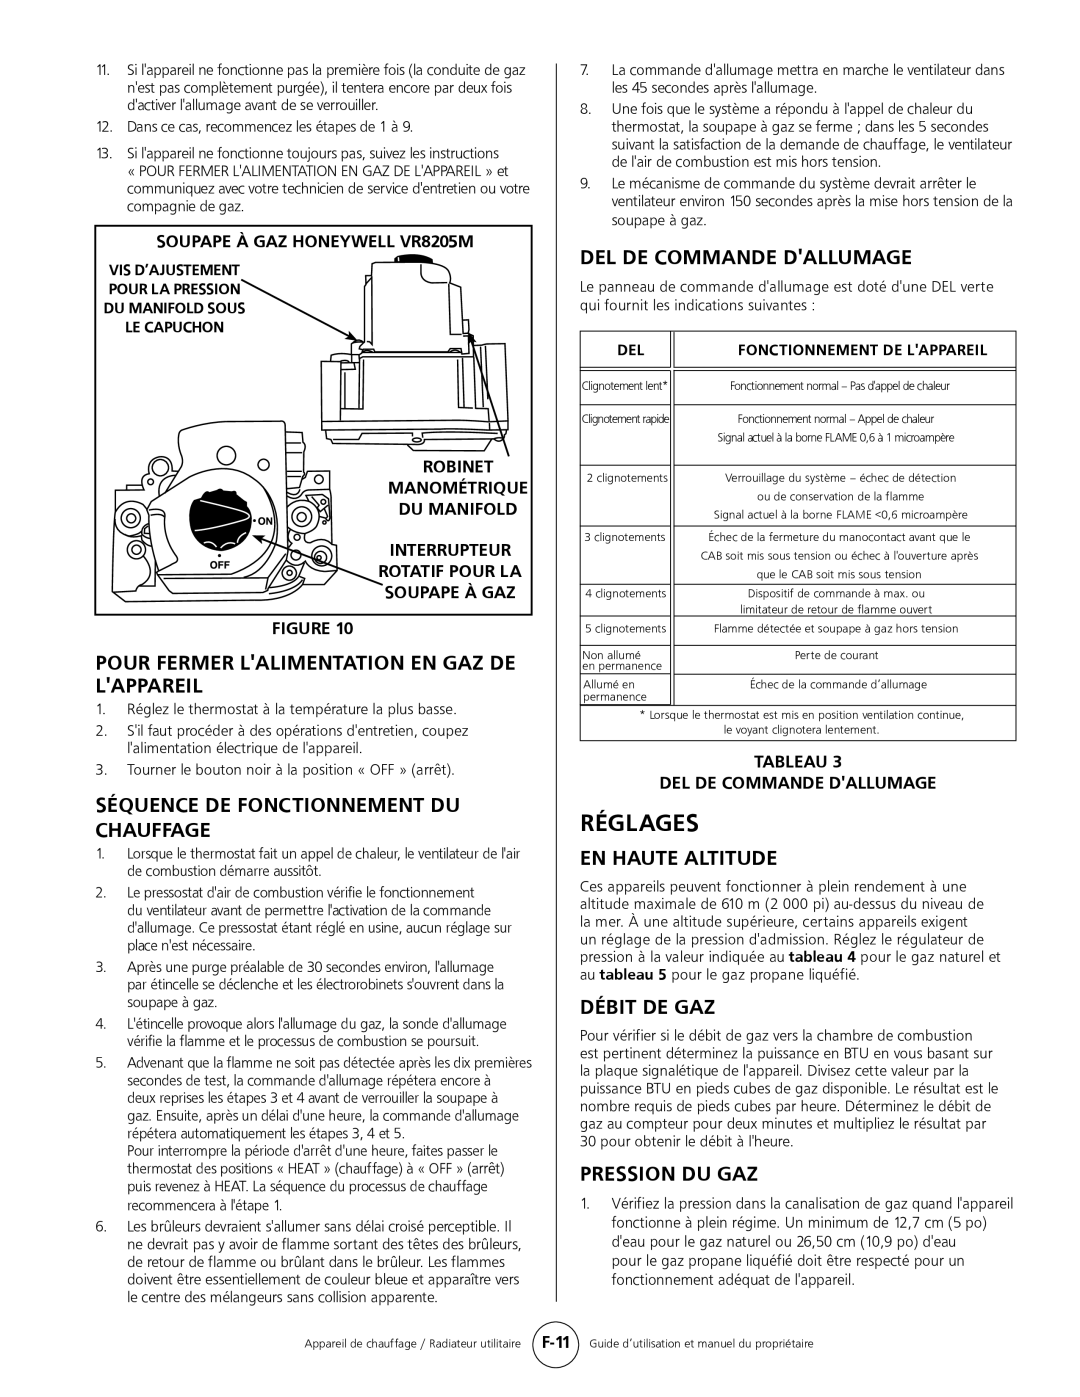 Mr. Heater MHU 80, MHU 50 Réglages, Pour Fermer Lalimentation En Gaz De Lappareil, Séquence De Fonctionnement Du Chauffage 